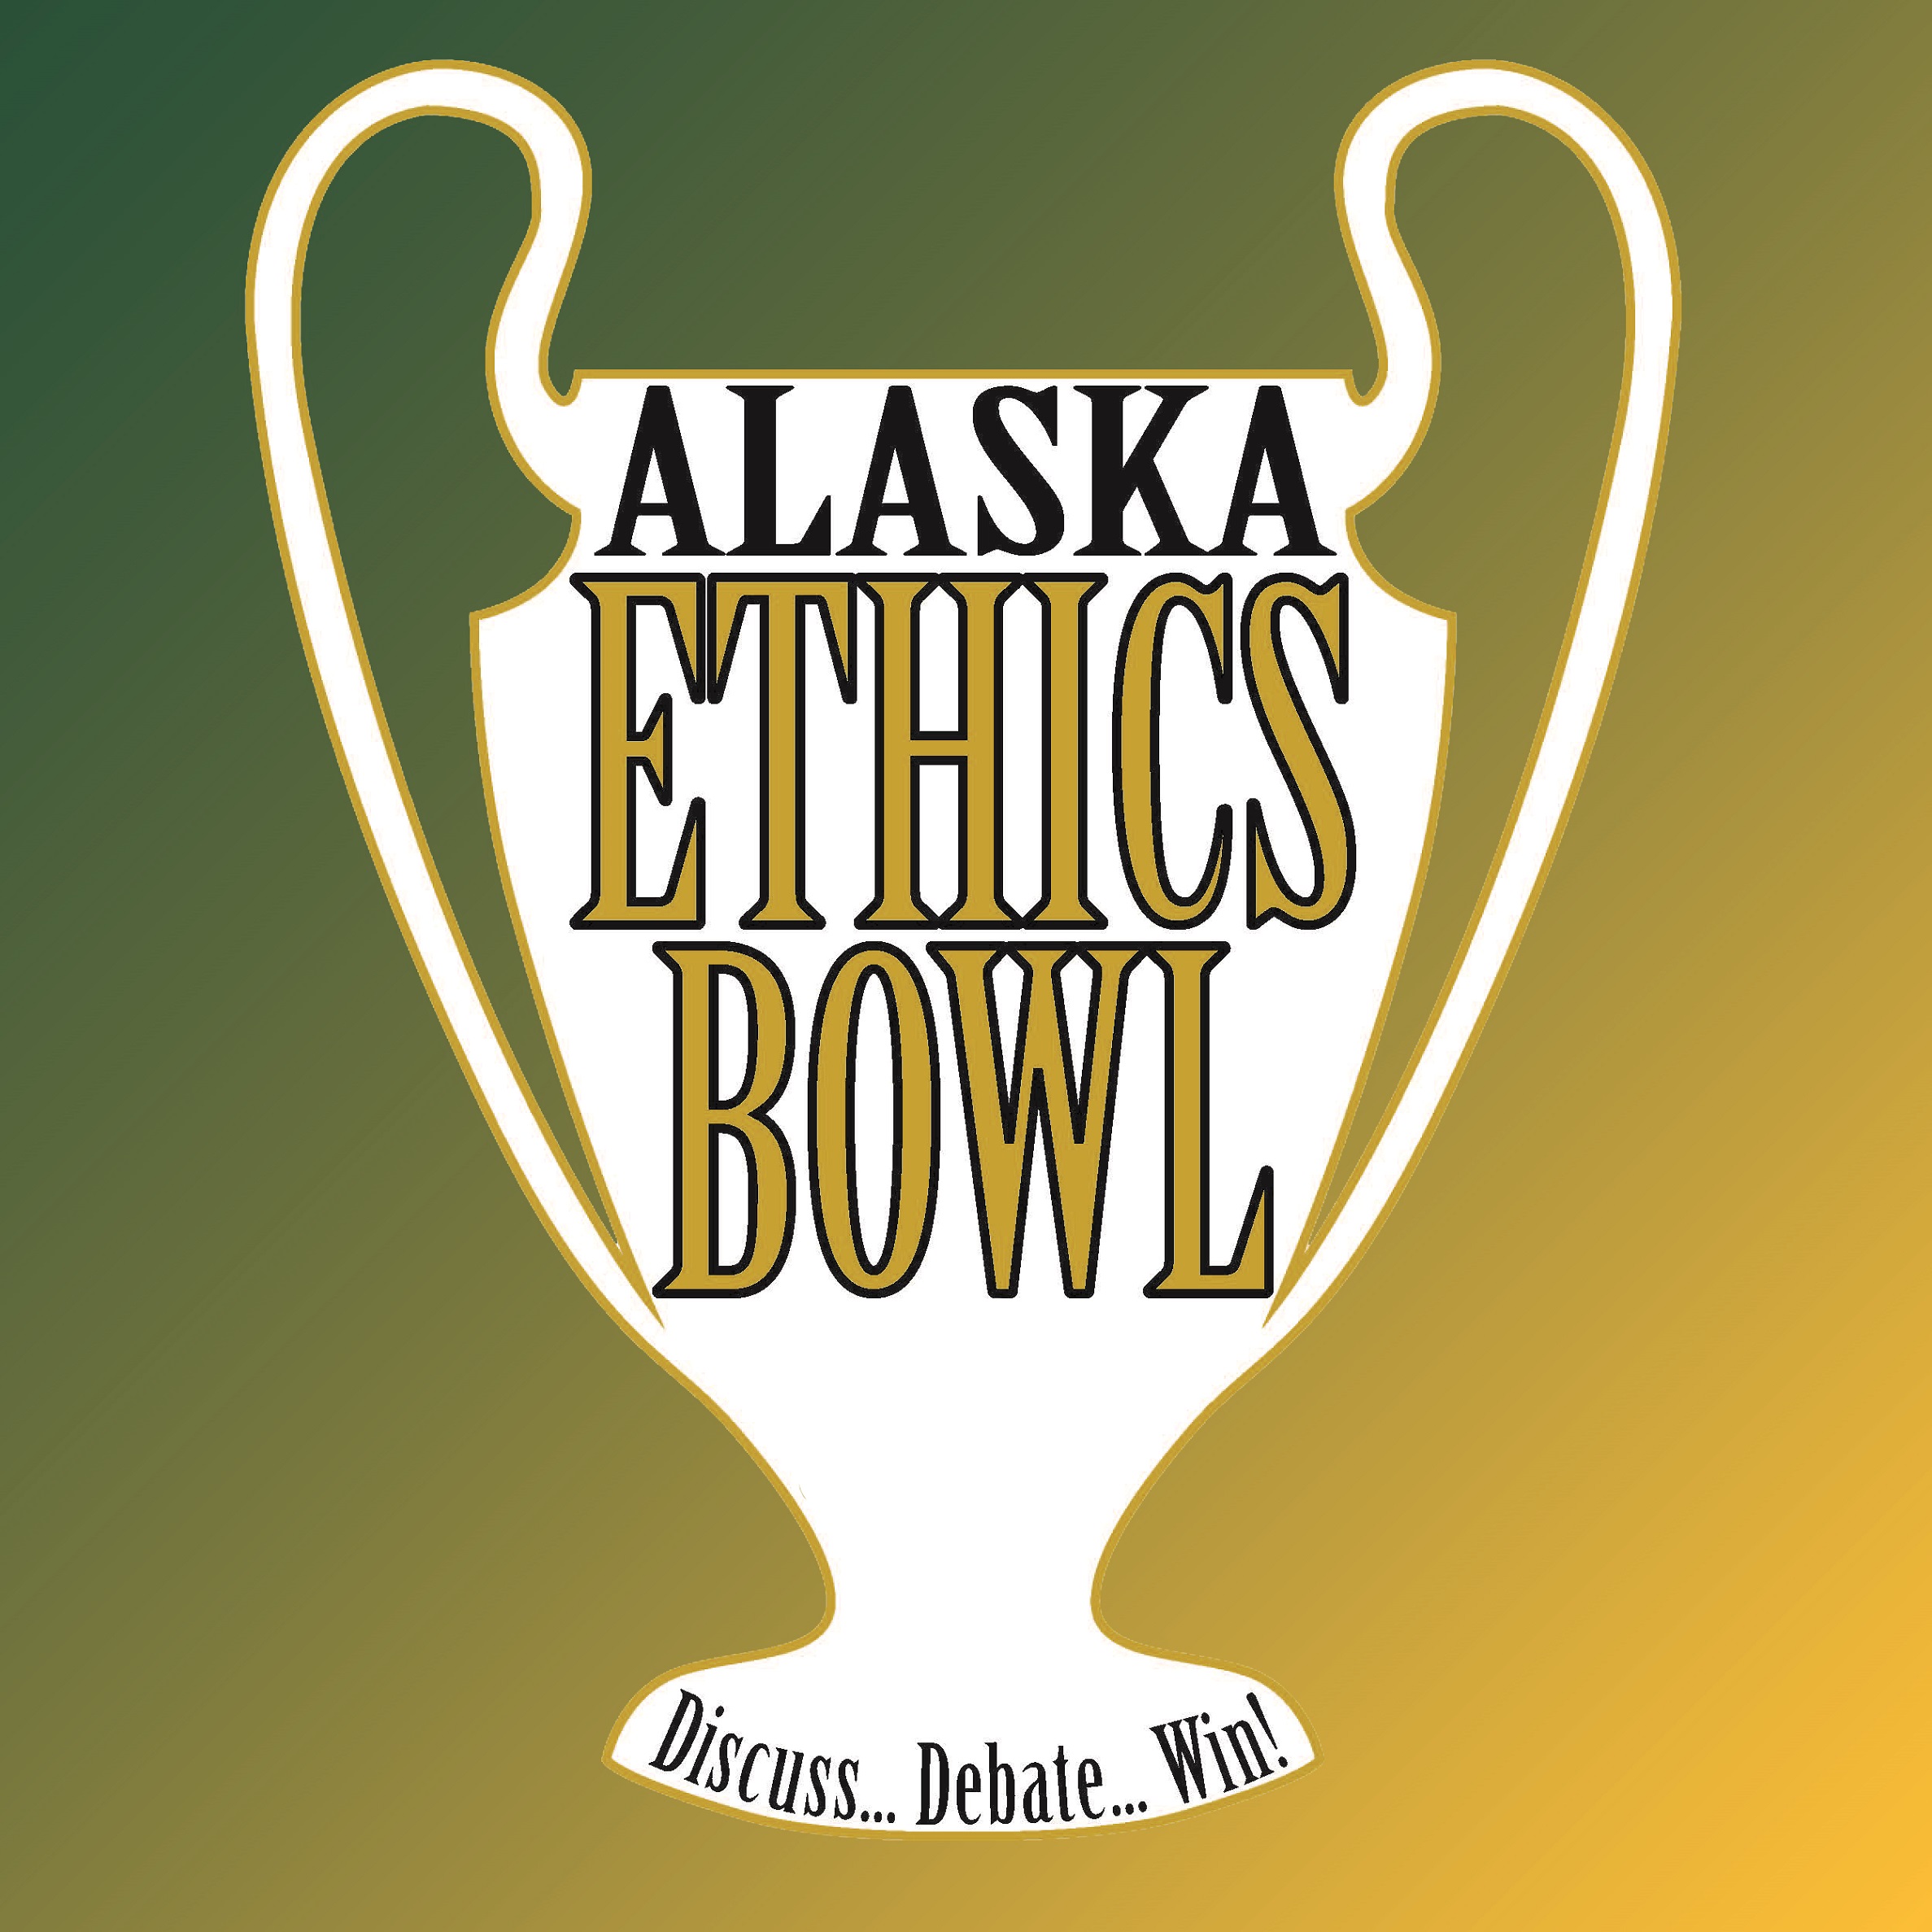 Alaska Ethics Bowl: Discuss...Debate...Win!